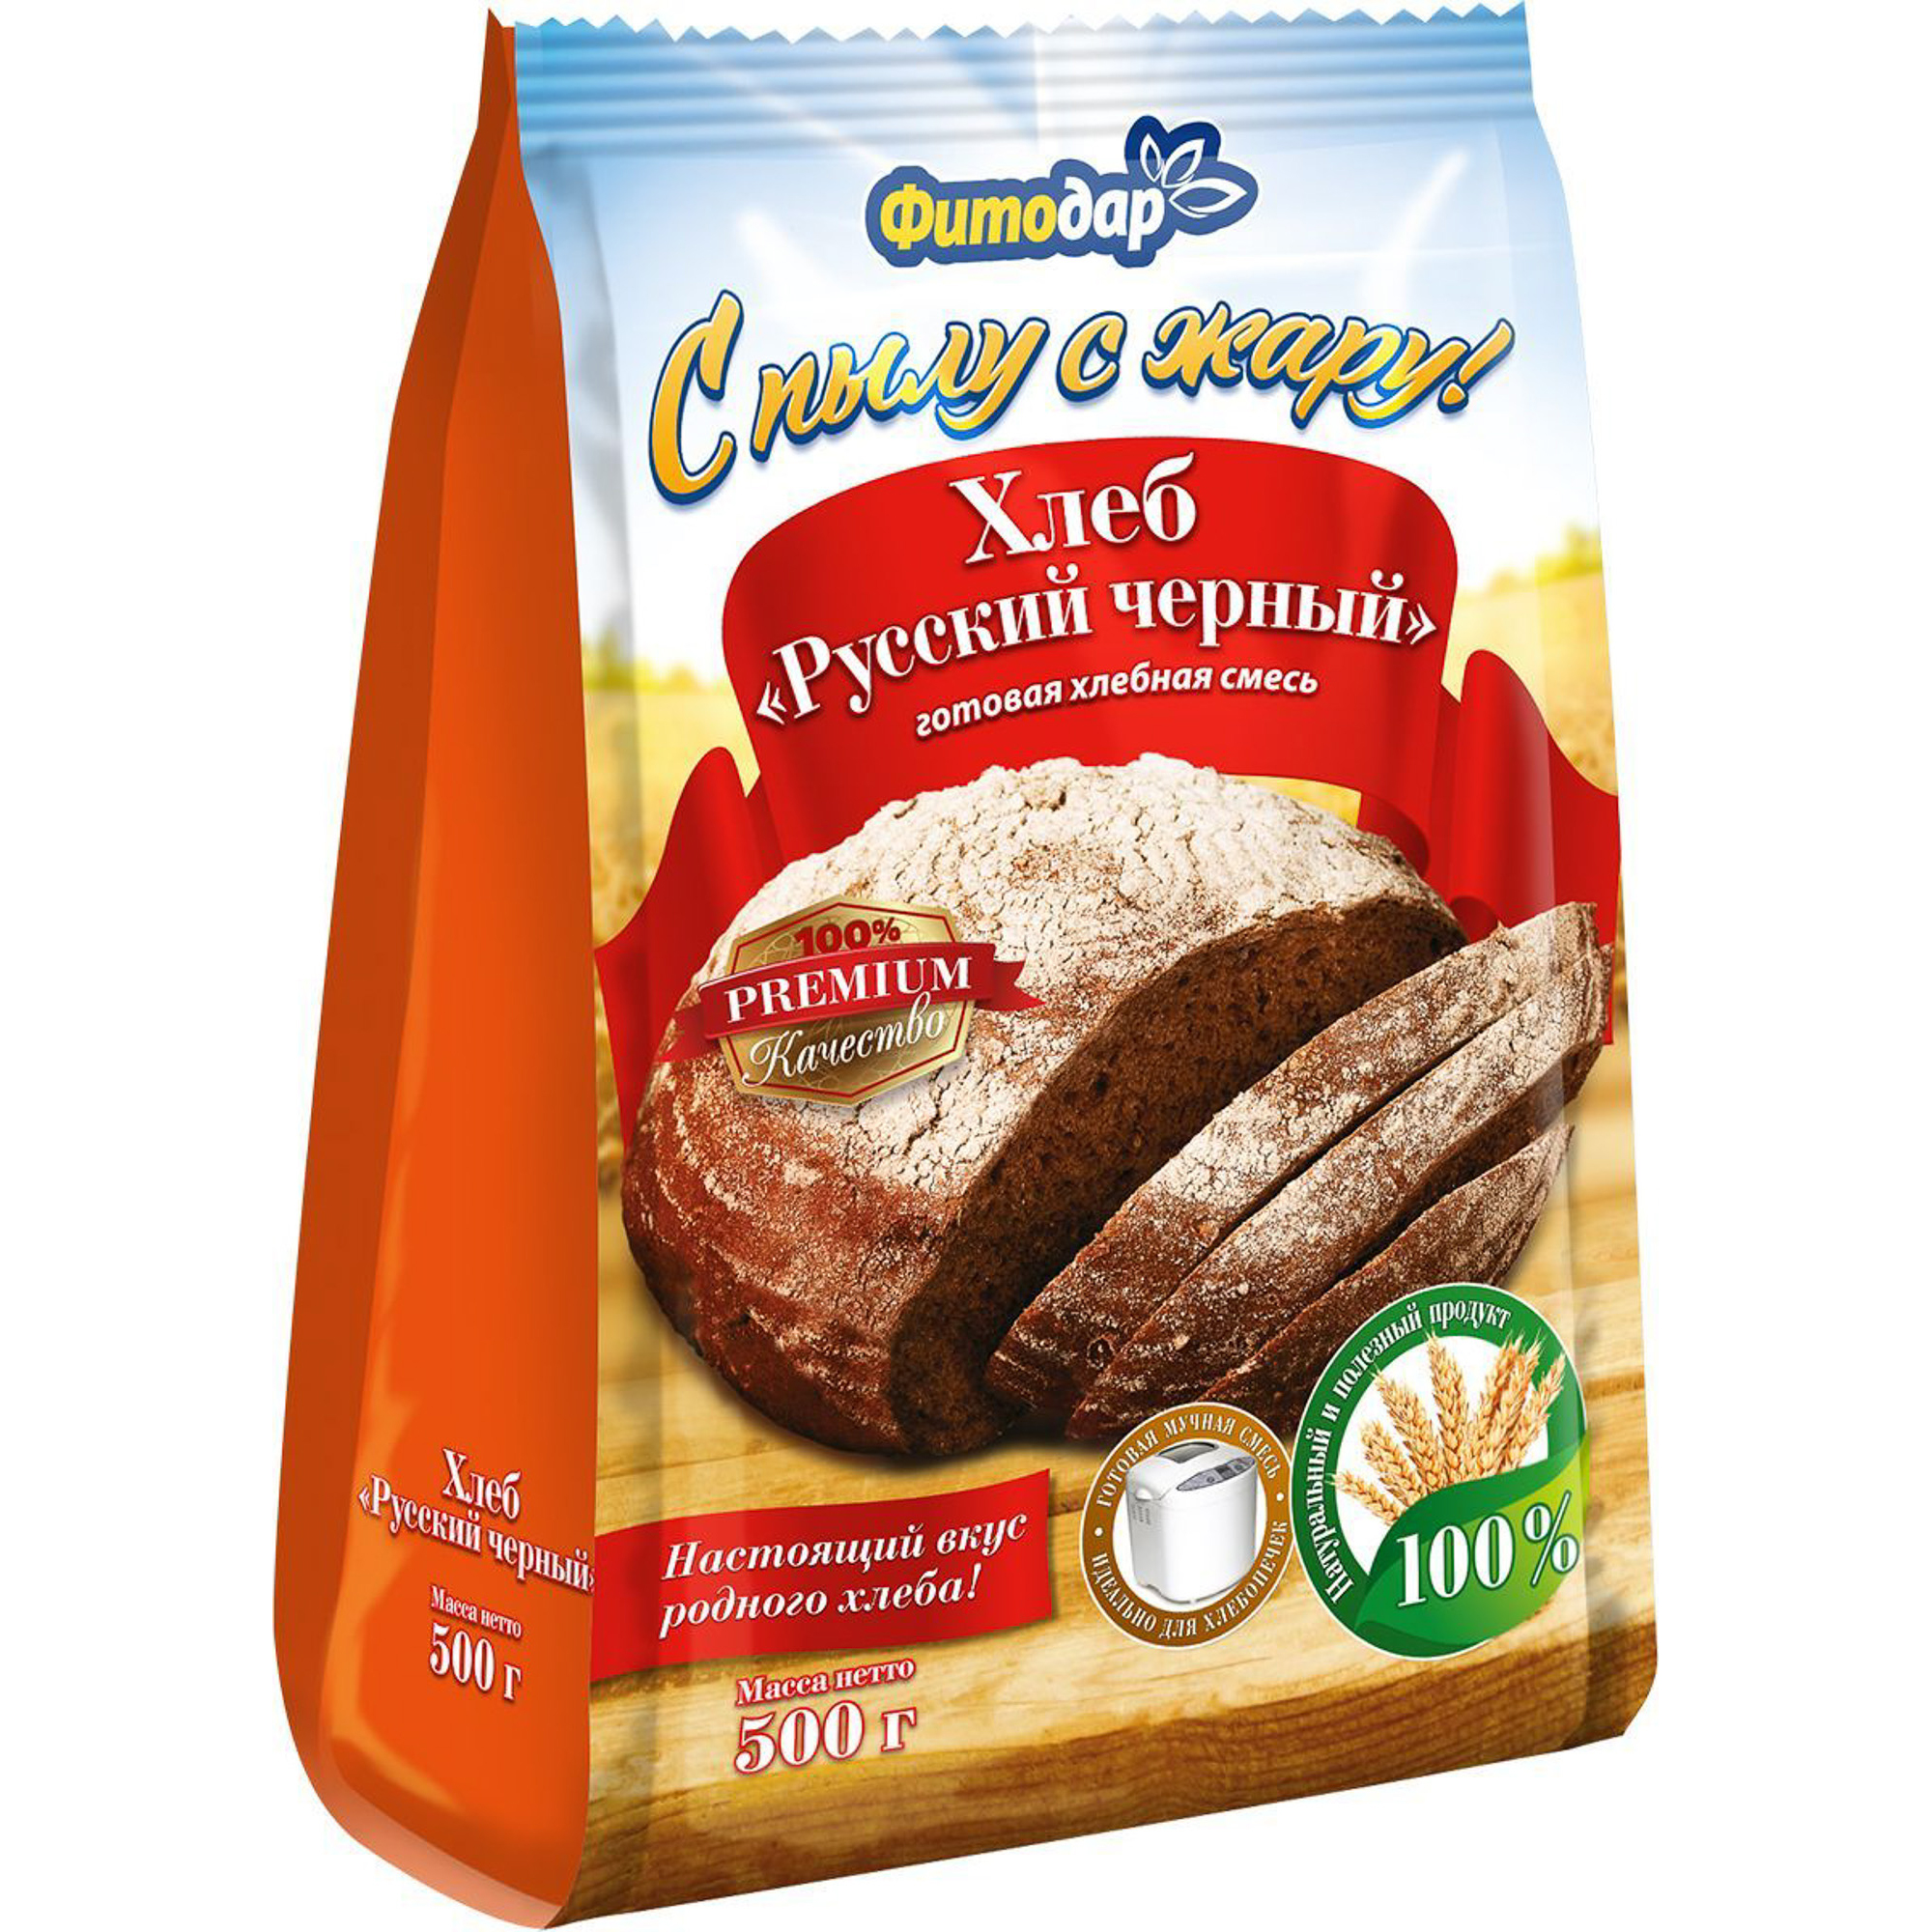 Хлебная смесь Фитодар хлеб русский черный 500 г